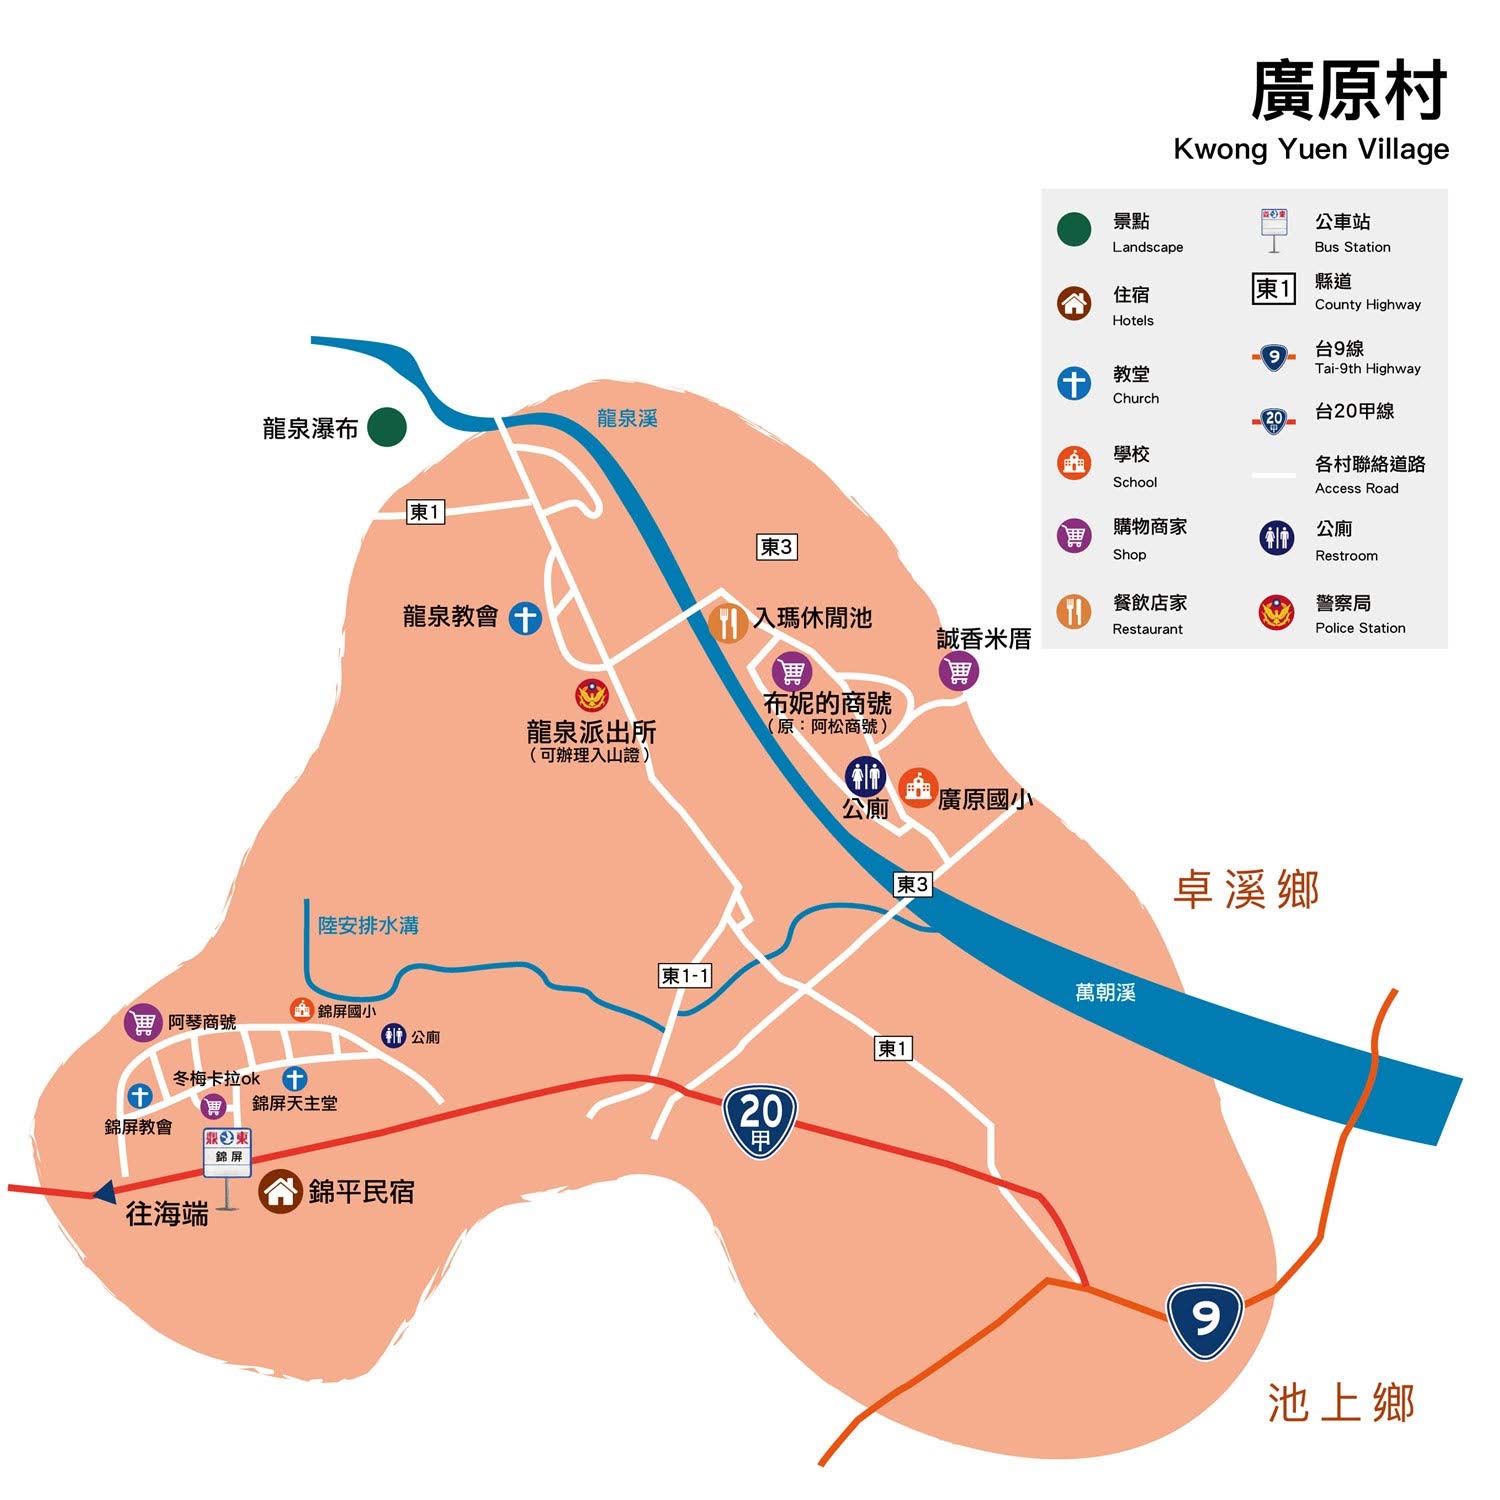 廣原村地圖說明如下